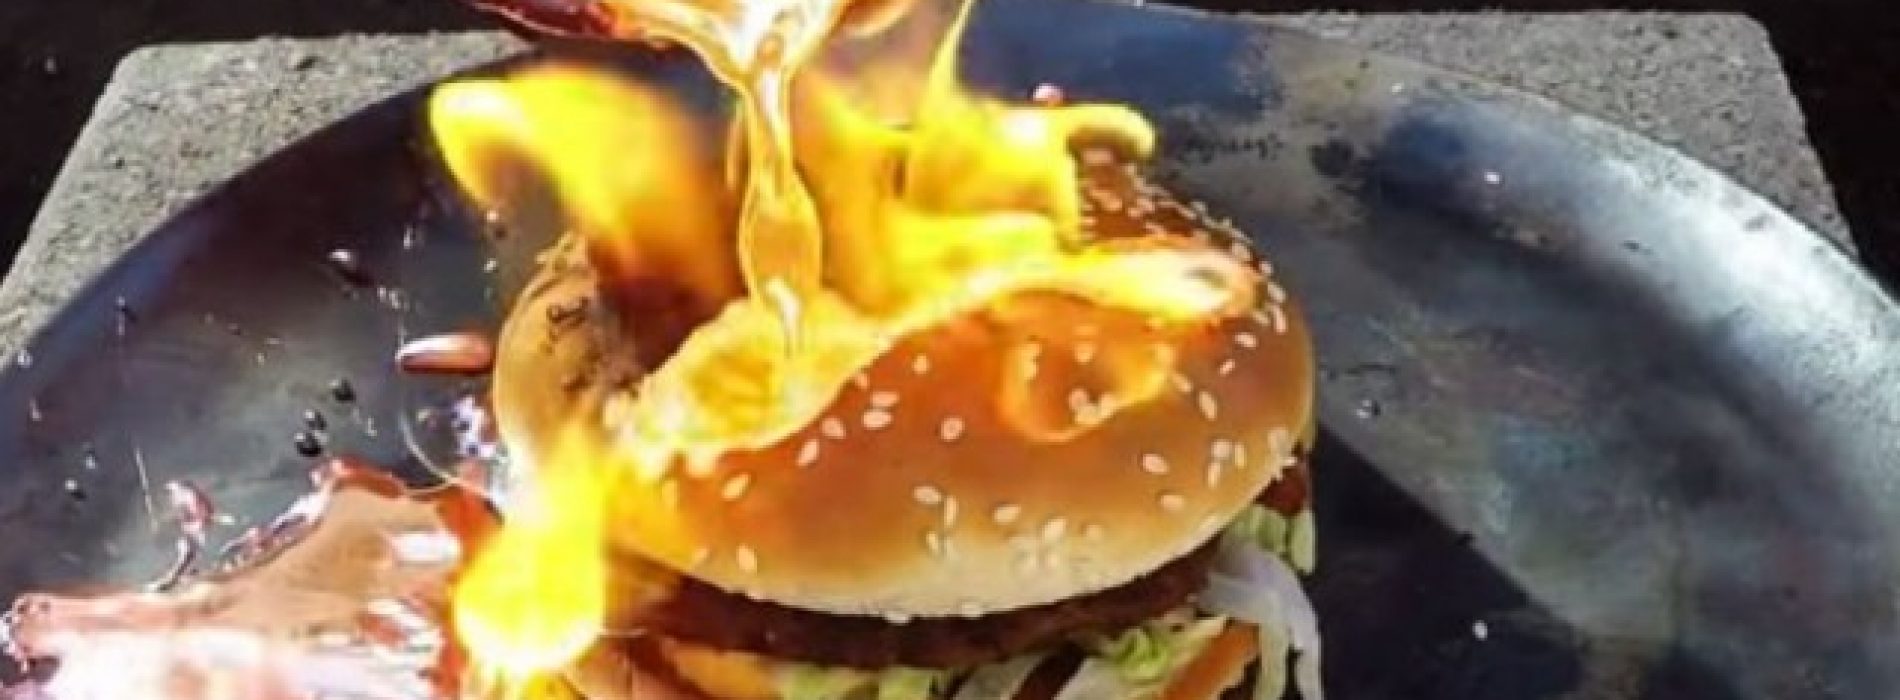 Vloeibaar koper heeft moeite met vernietigen ‘Big-Mac’